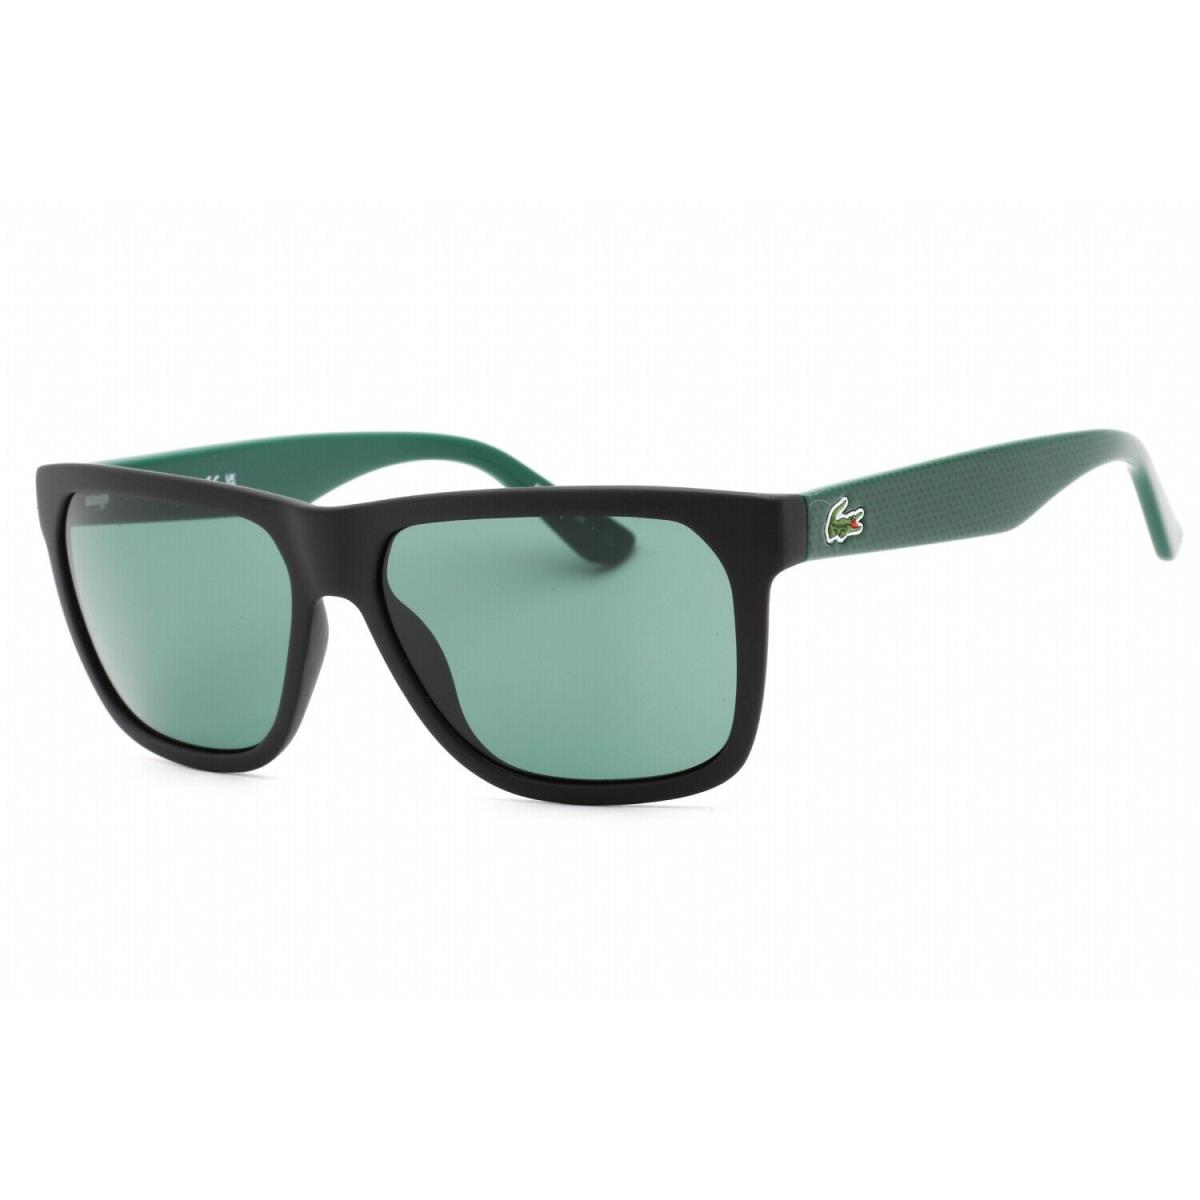 Lacoste L732S-004-56 Sunglasses Size 56mm 140mm 15mm Onyx Men